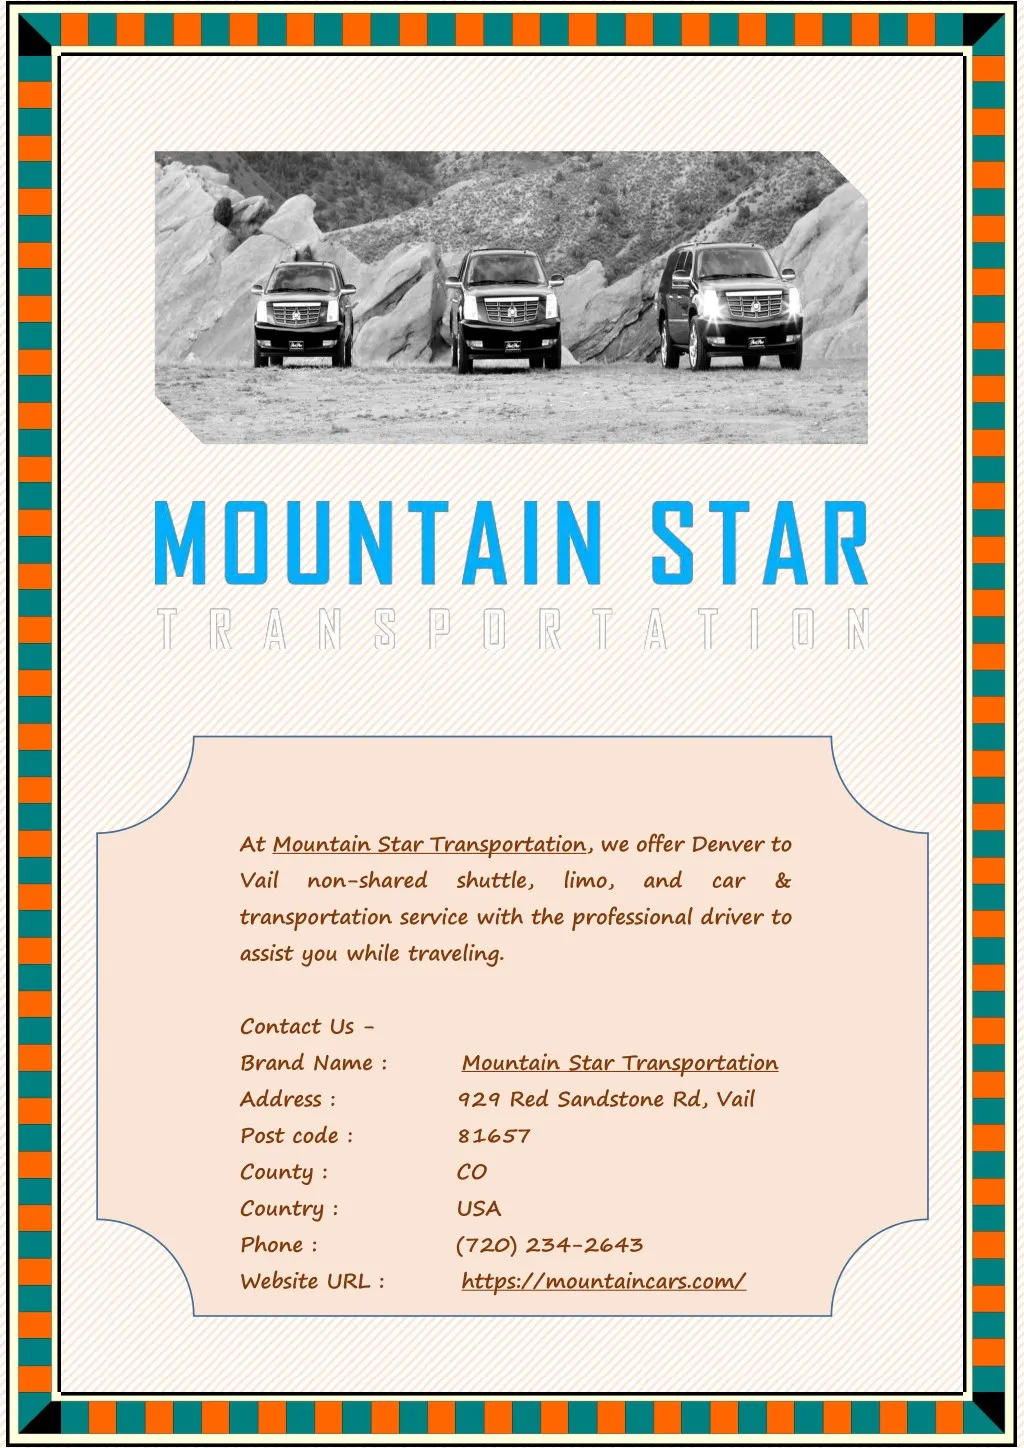 at mountain star transportation we offer denver